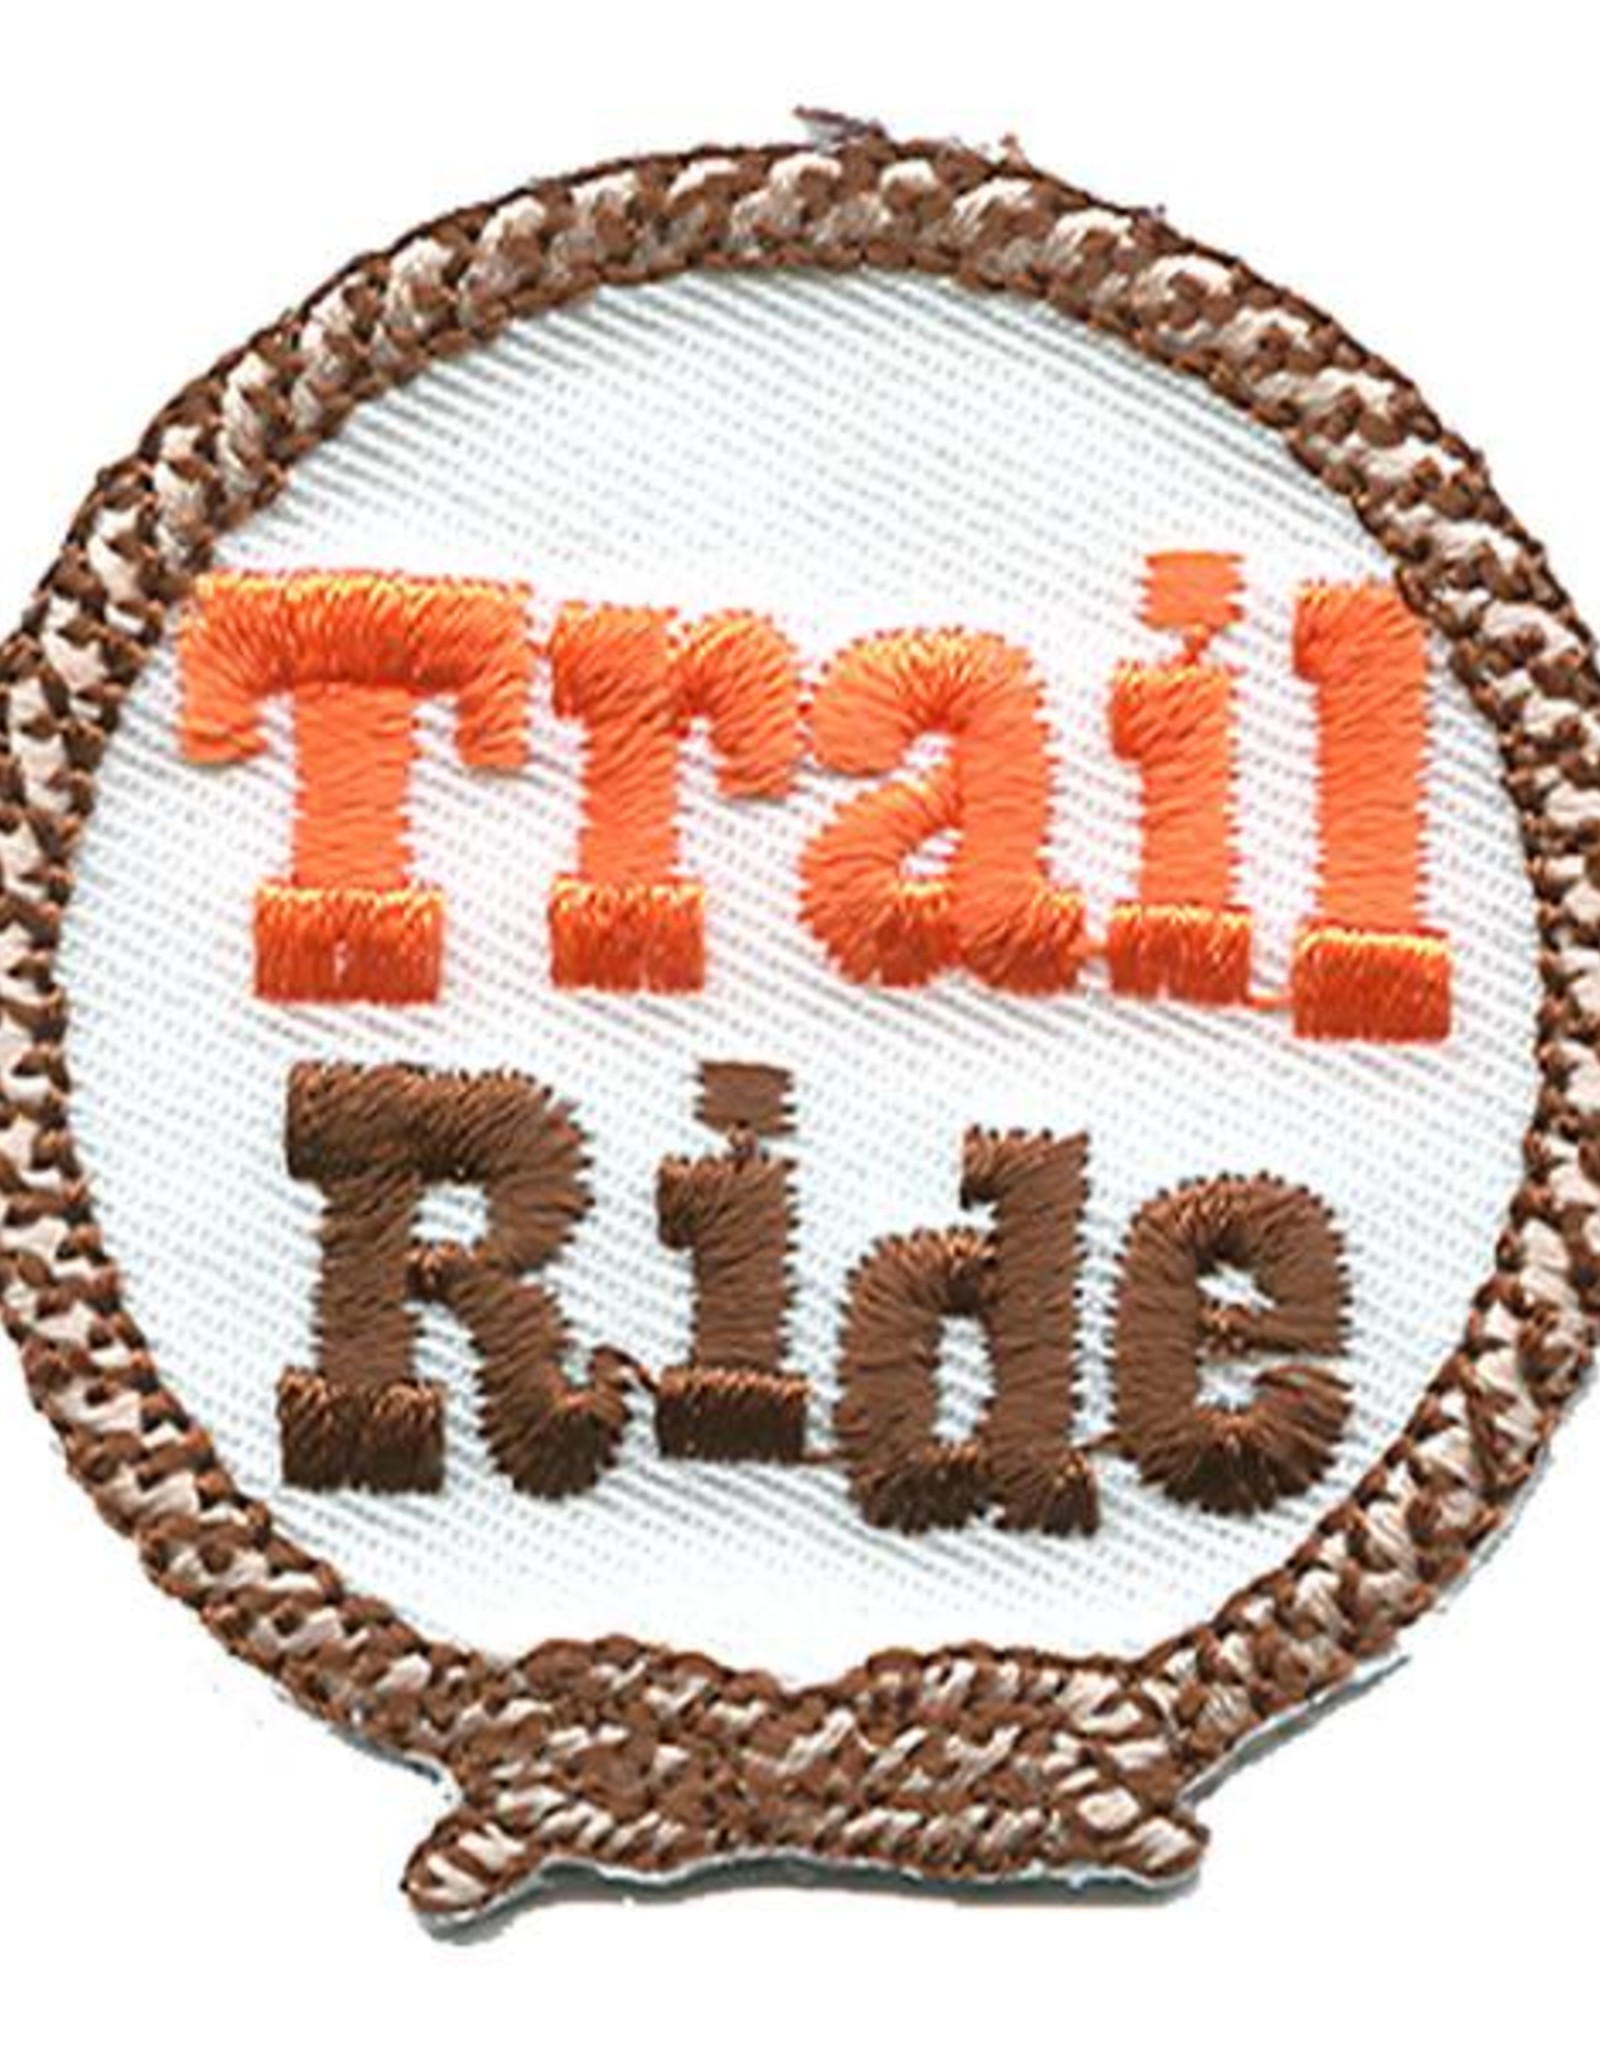 *Trail Ride Fun Patch